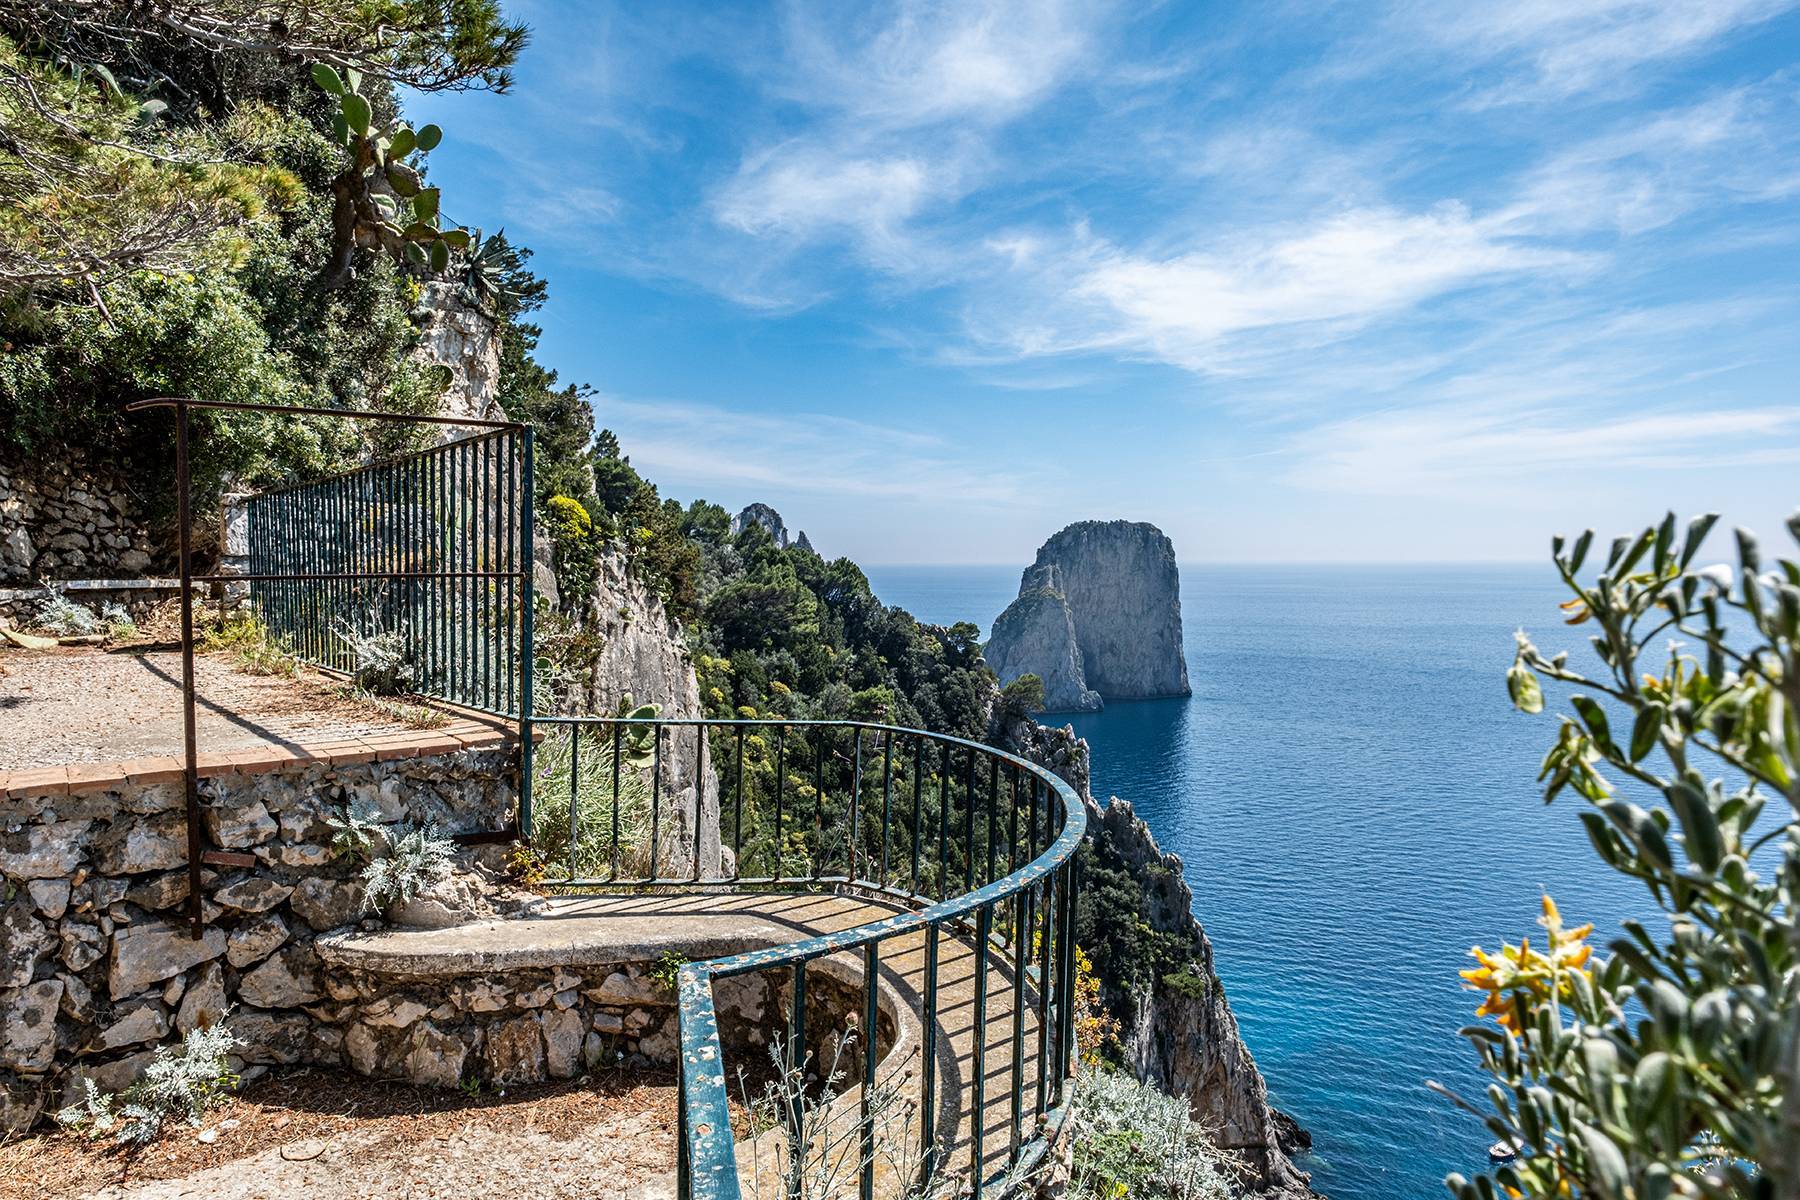 Villa with a breathtaking view on the Faraglioni rocks